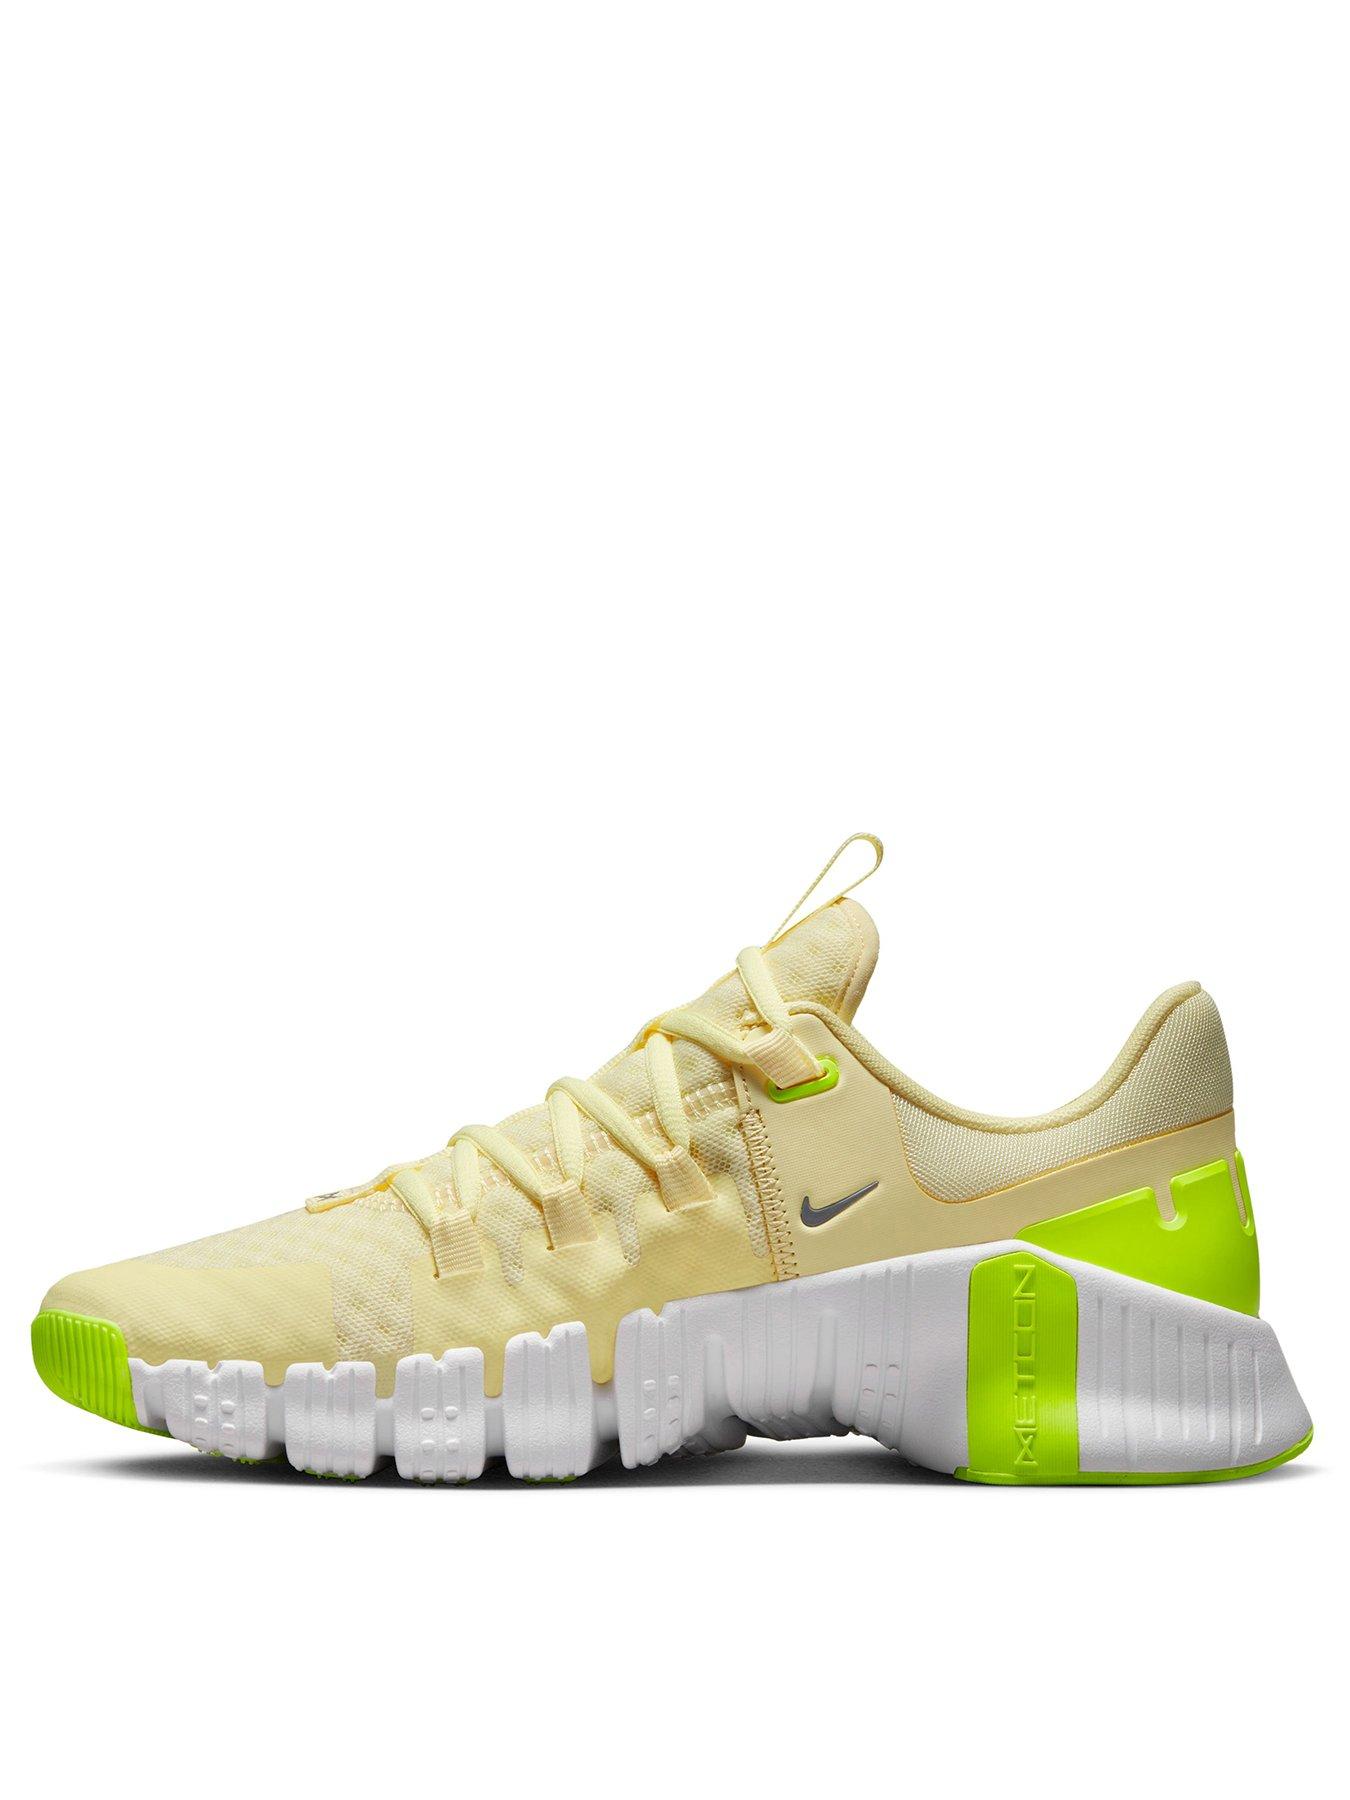 Obstinado bomba Sociología Nike Free Metcon 5 Trainers - Yellow | Very Ireland